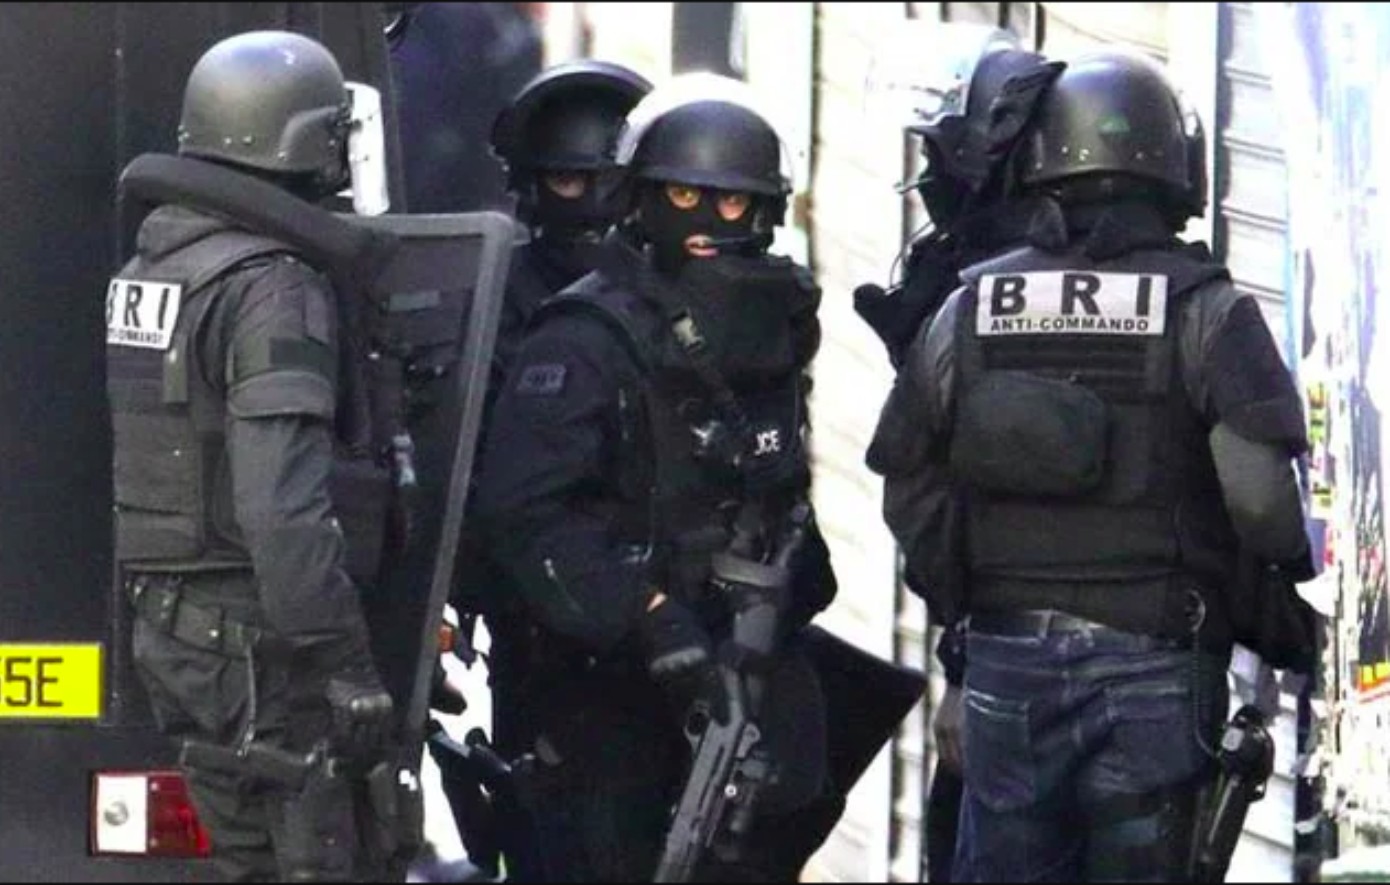 BRI: Η ελίτ αντιτρομοκρατική μονάδα της Γαλλίας αναλαμβάνει το Παρί Σεν Ζερμέν &#8211; Μπαρτσελόνα